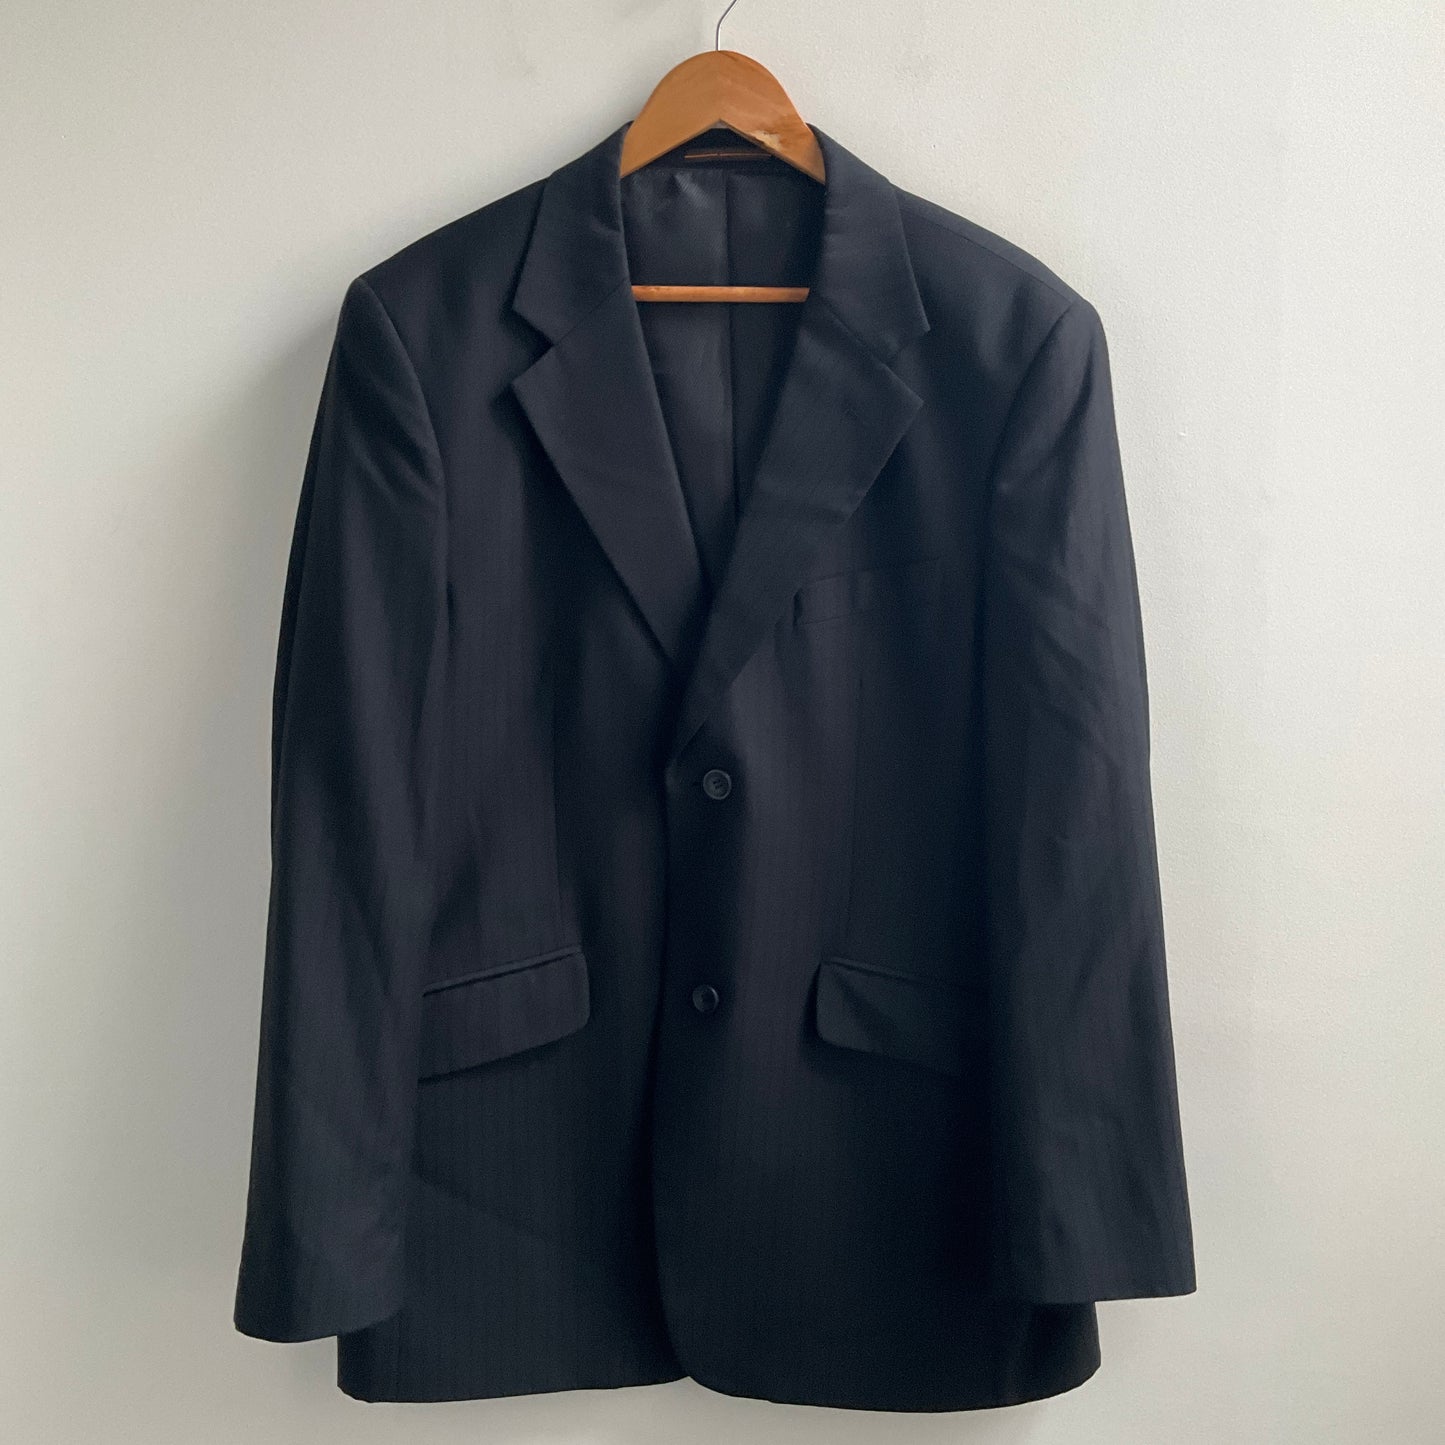 Voeut Milano - Men's Suit Jacket